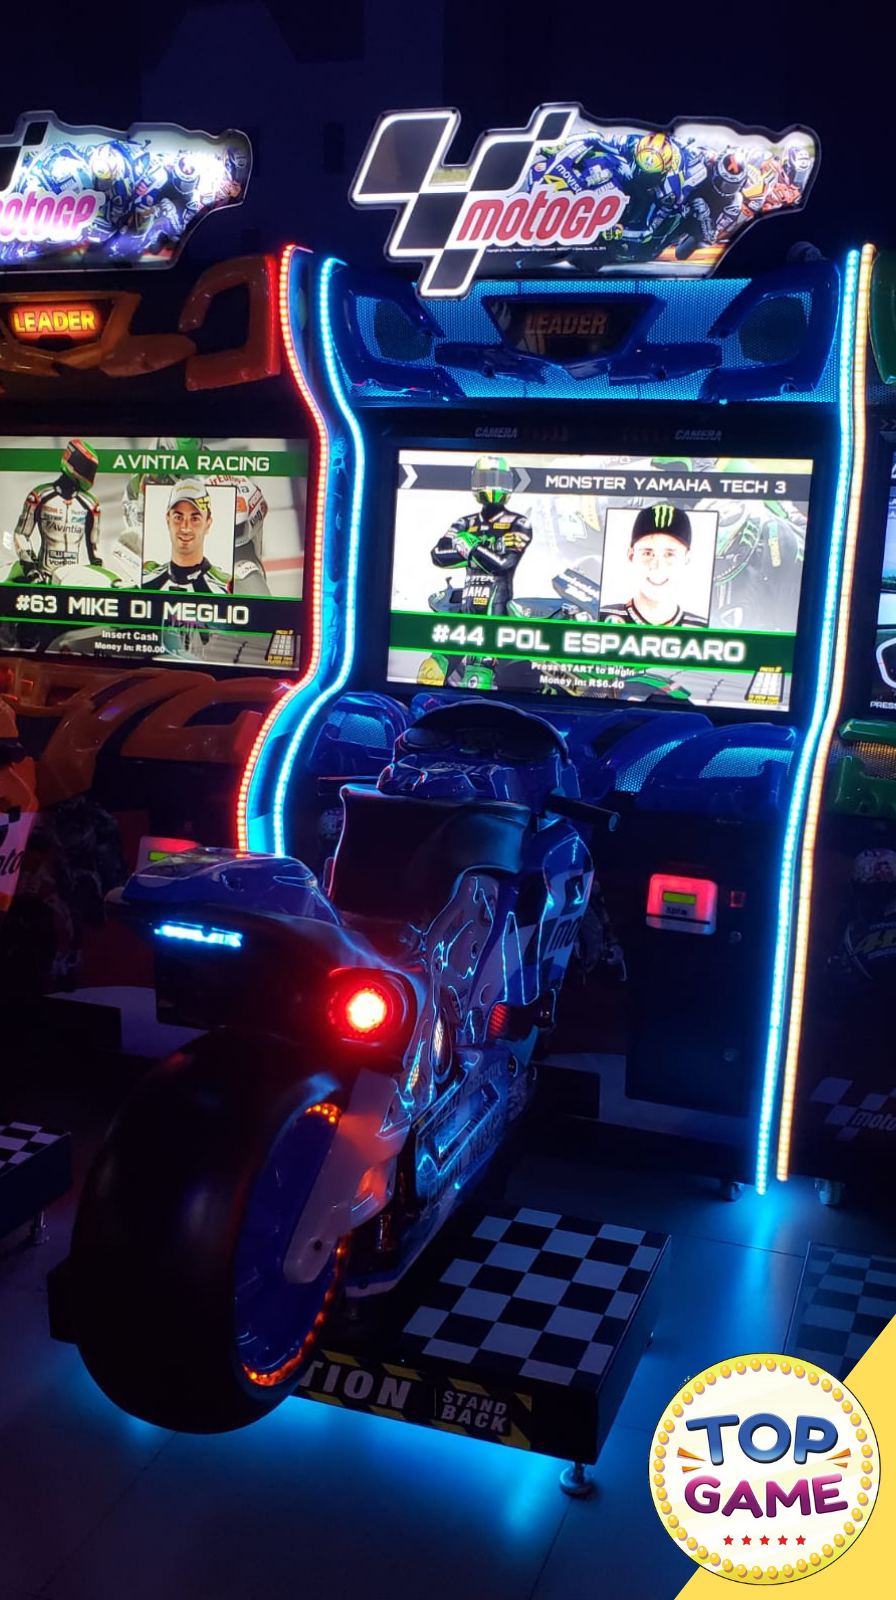 Moto Driving Simulator, Equipamento de Jogos de Diversão, Máquina